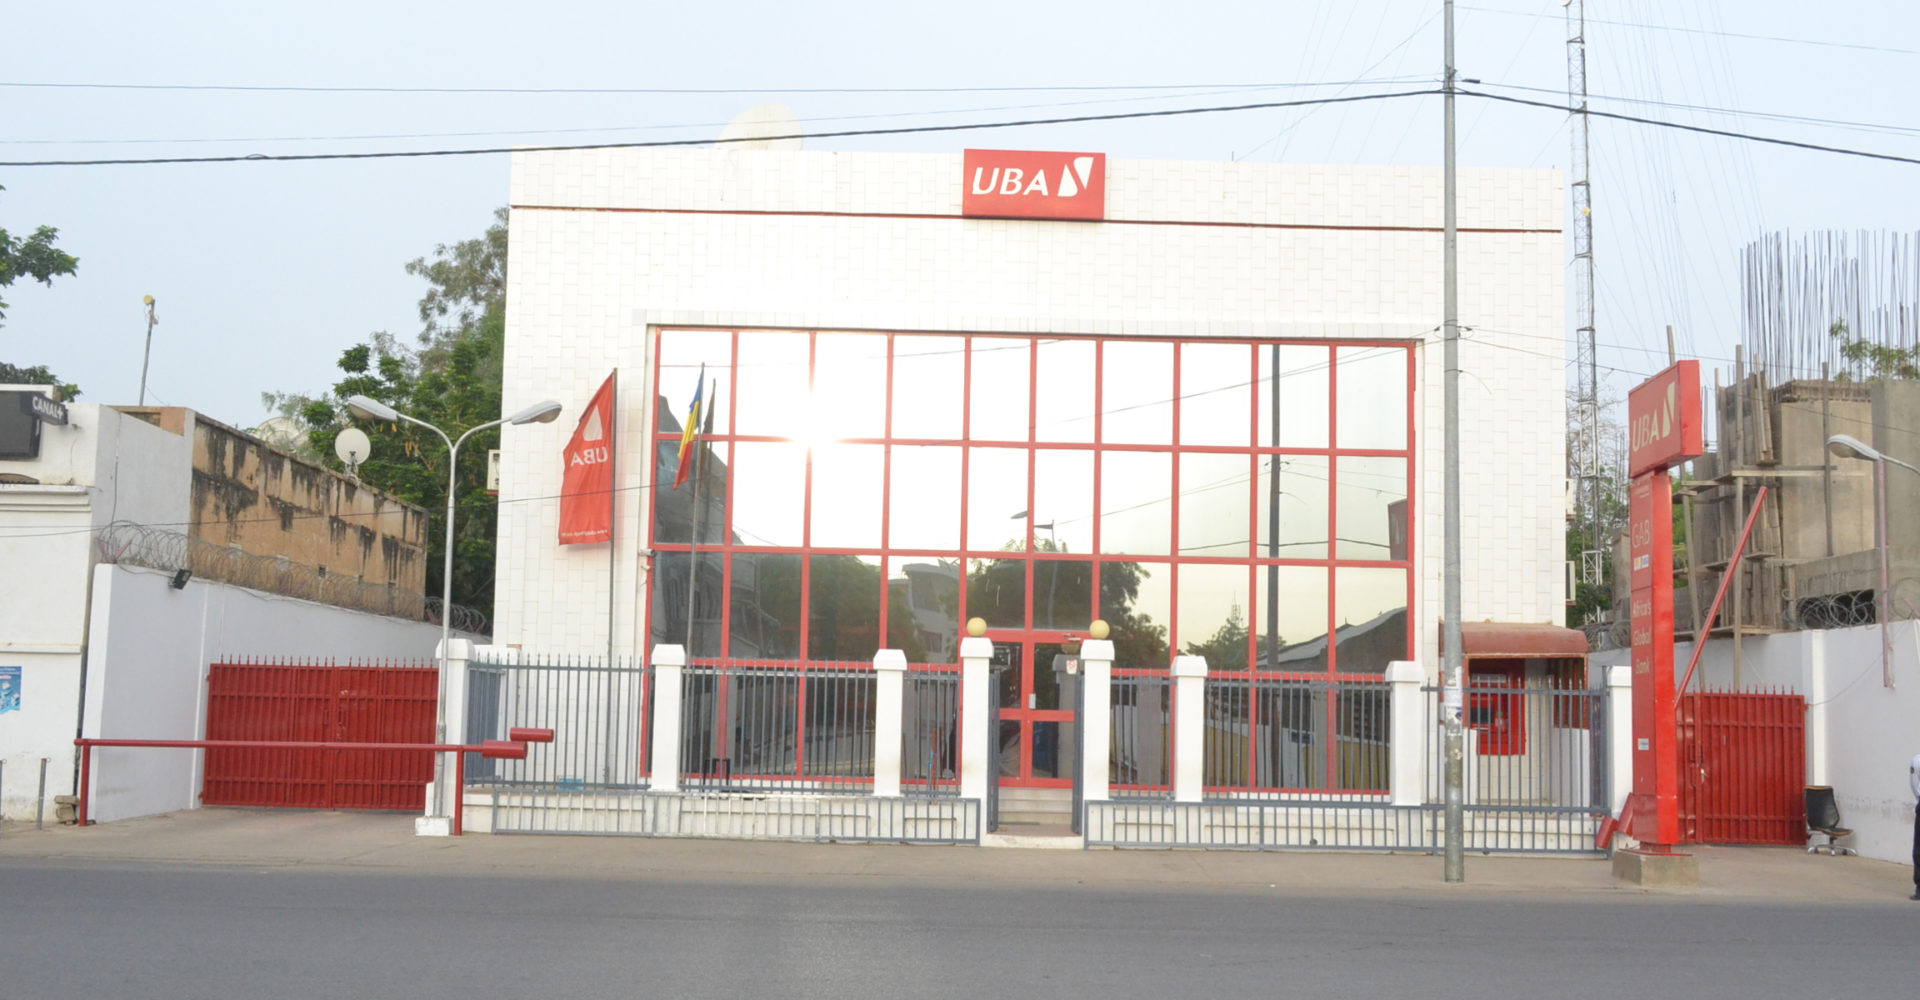 UBA primé pour son appui aux communautés et sa bonne collaboration avec sa clientèle. 1